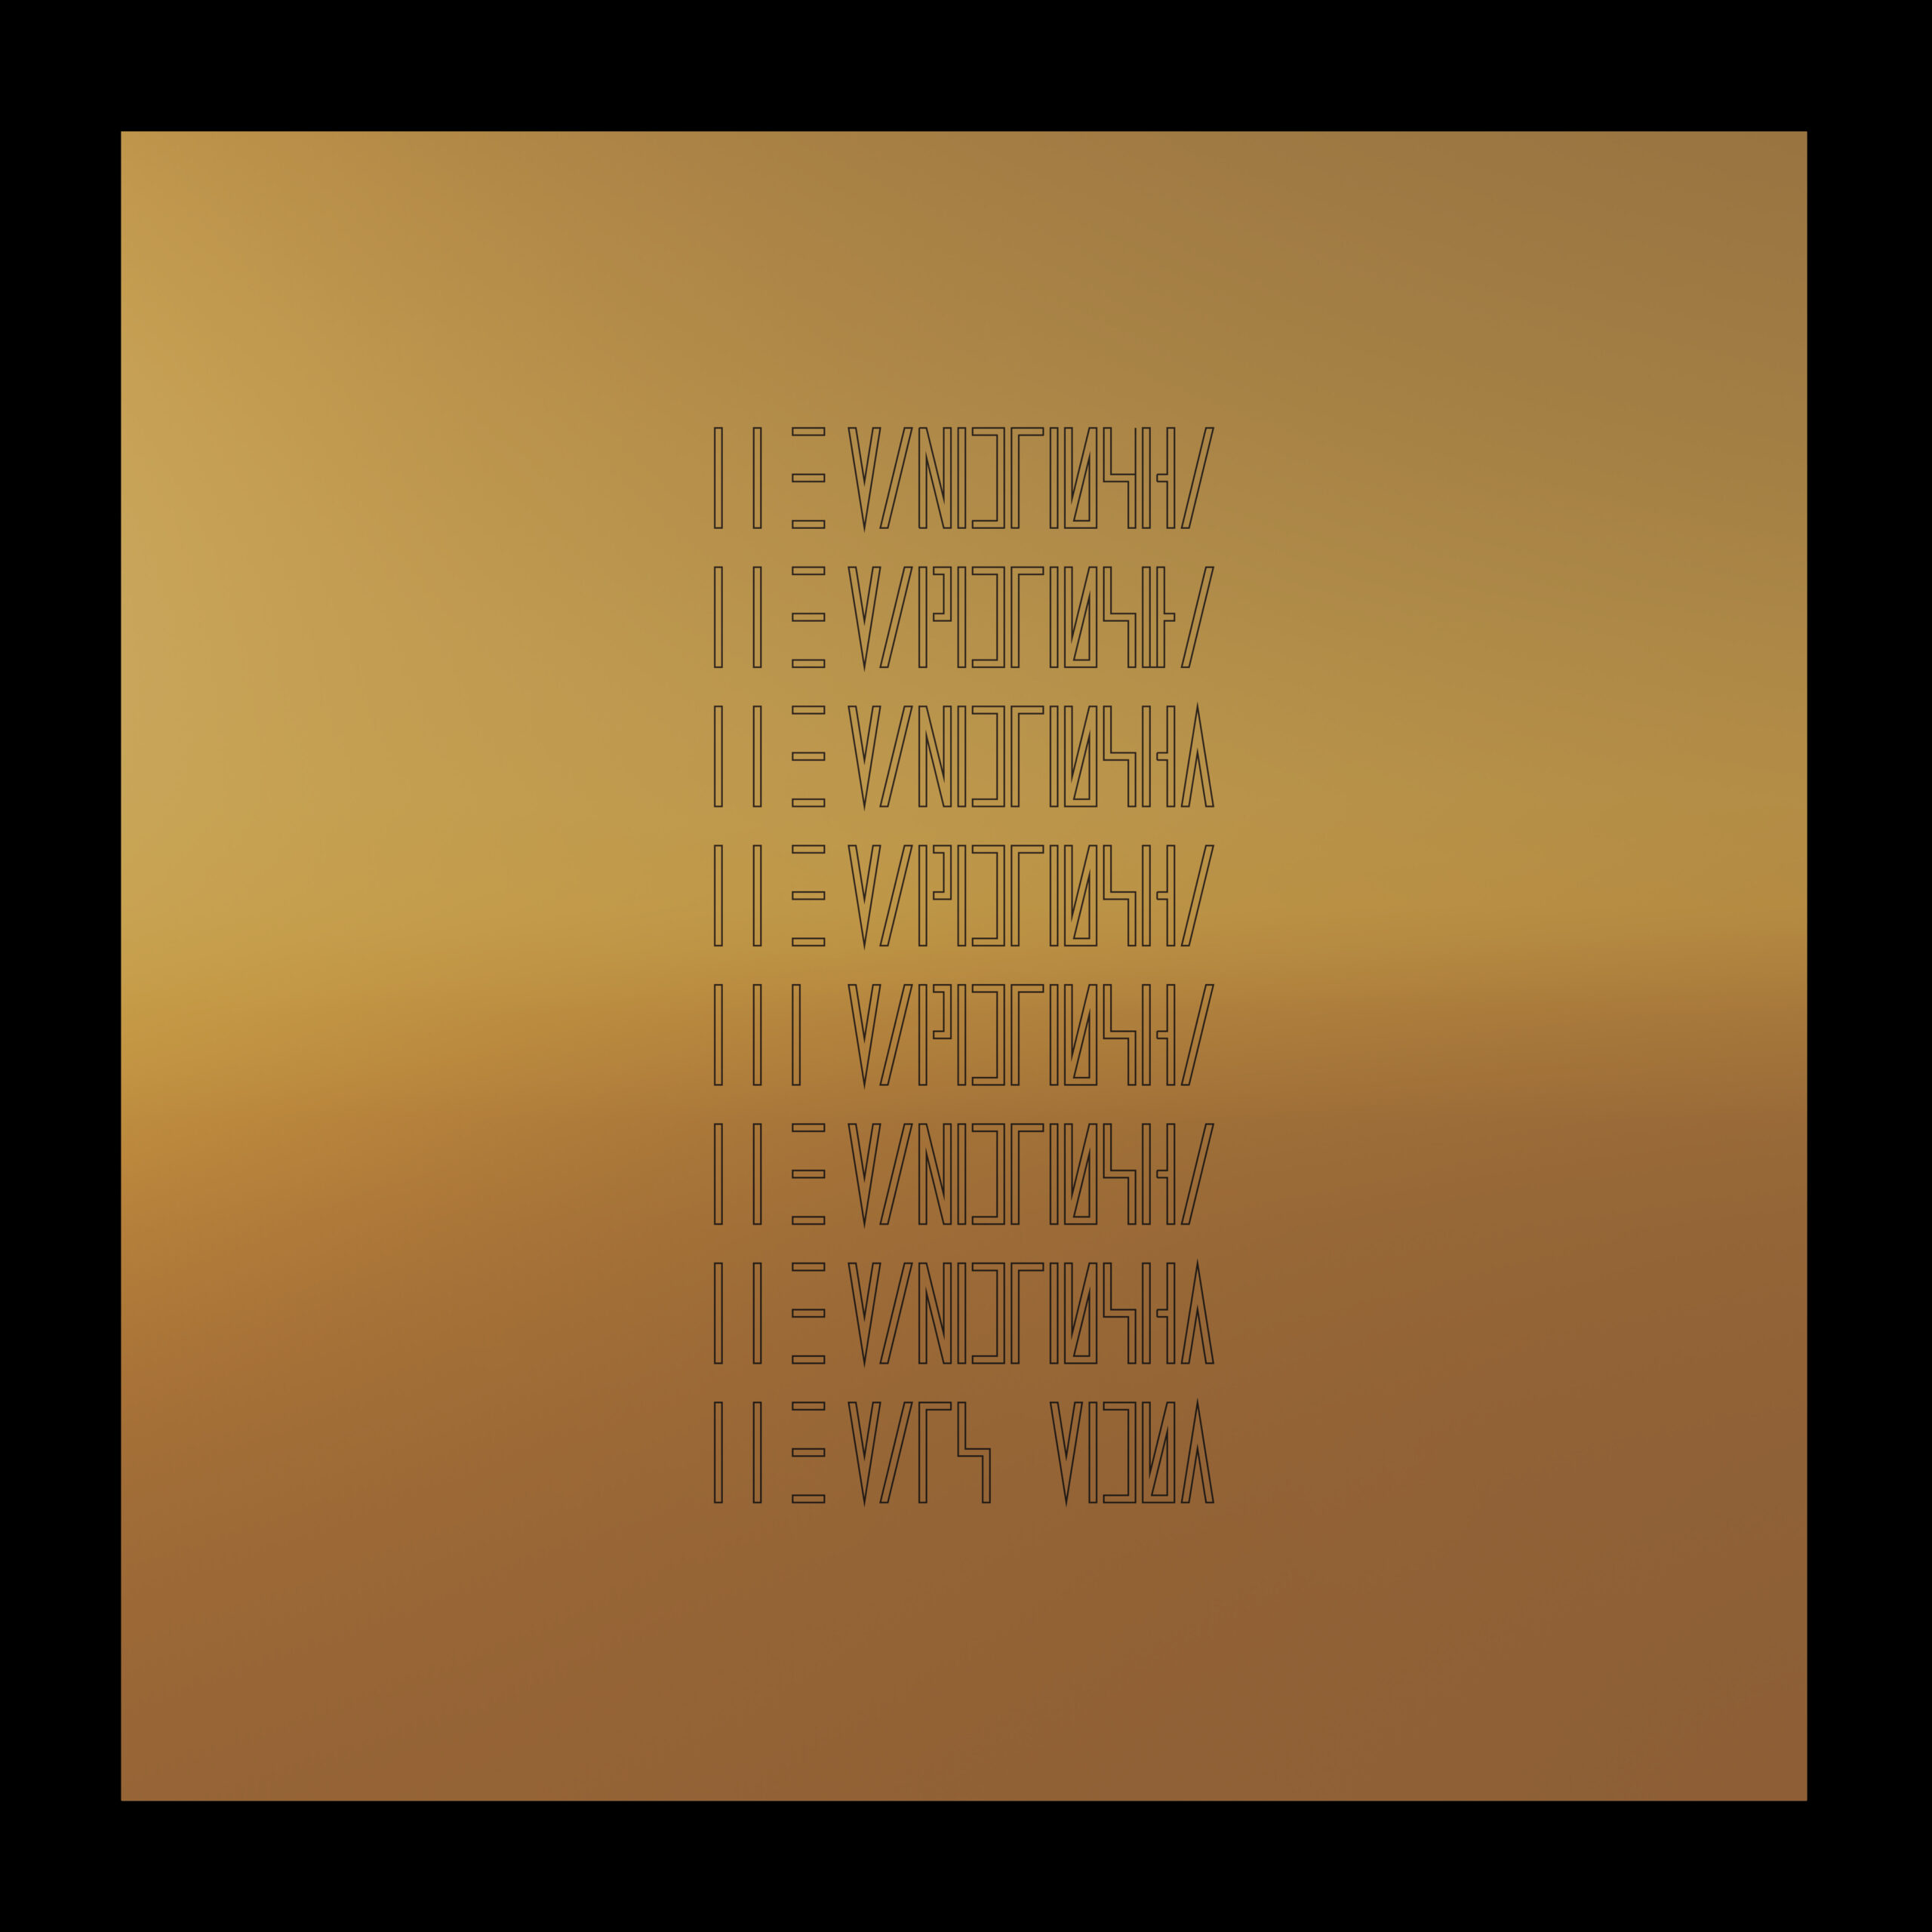 Reseña del nuevo disco de The Mars Volta